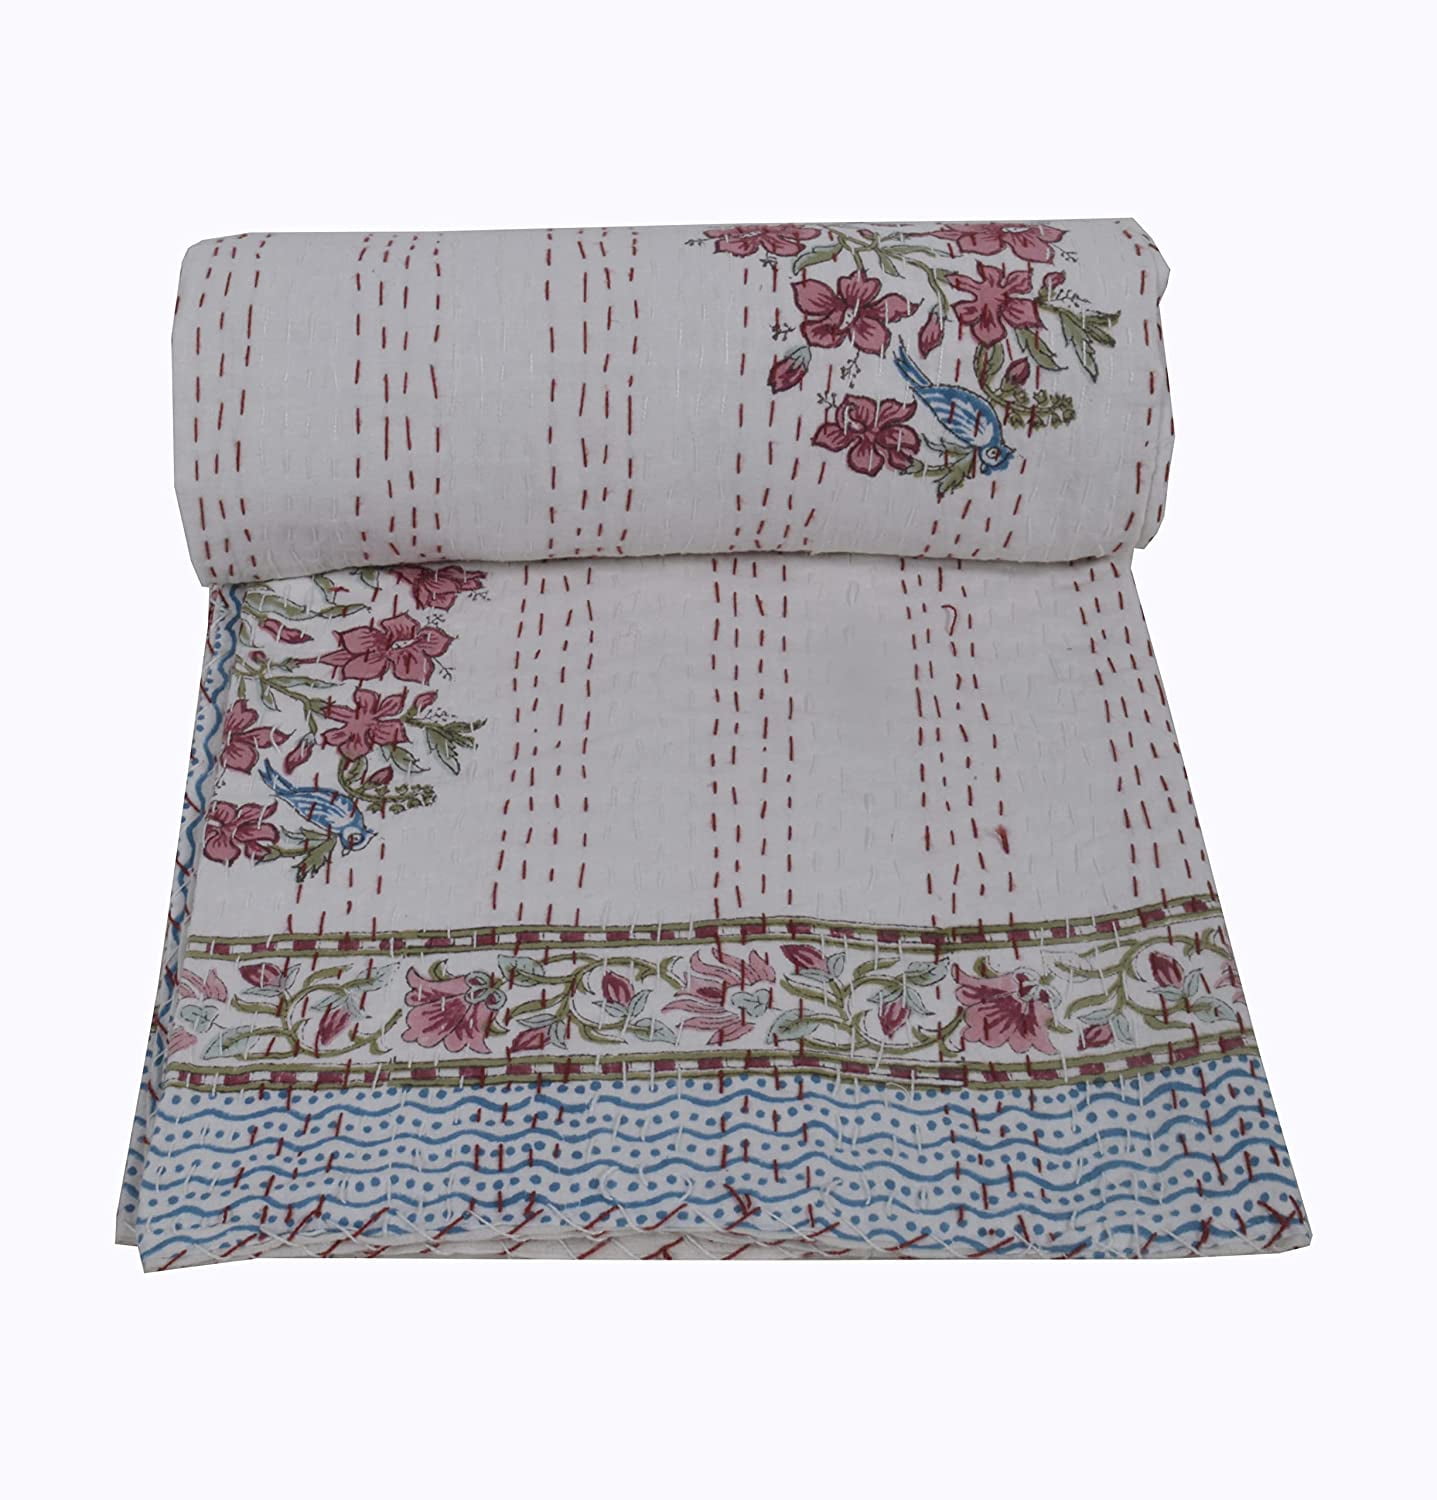 Twin Hand Block Print Cotton Kantha Quilt Indian Bedspread Handmade Bird Print 